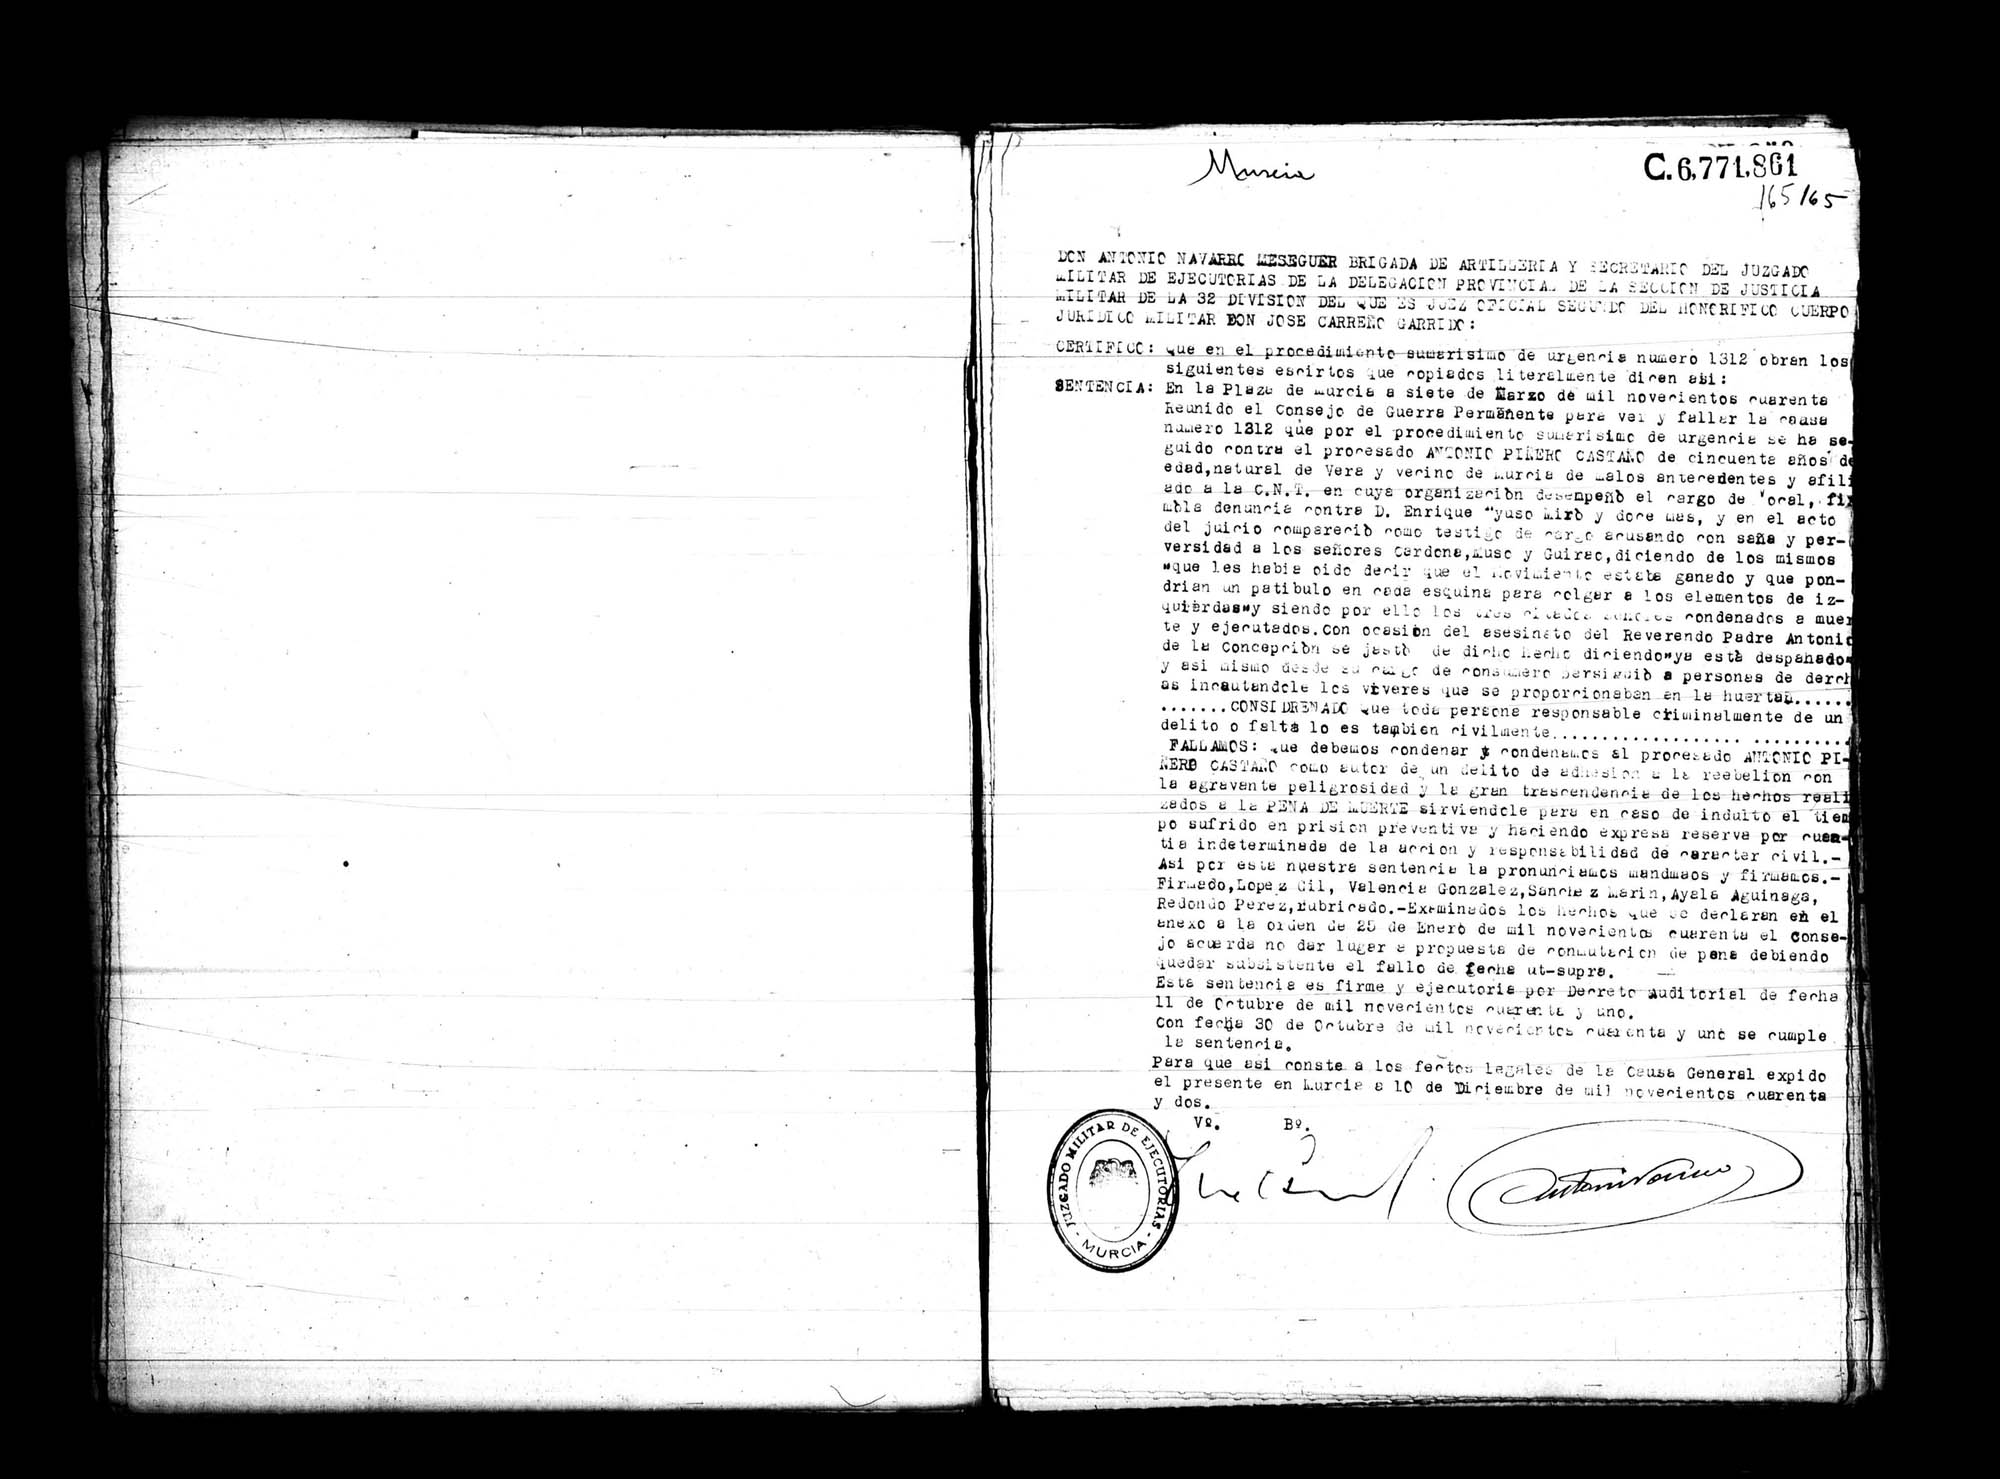 Certificado de la sentencia pronunciada contra Antonio Piñero Castaño,  causa 1312, el 7 de marzo de 1940 en Murcia.